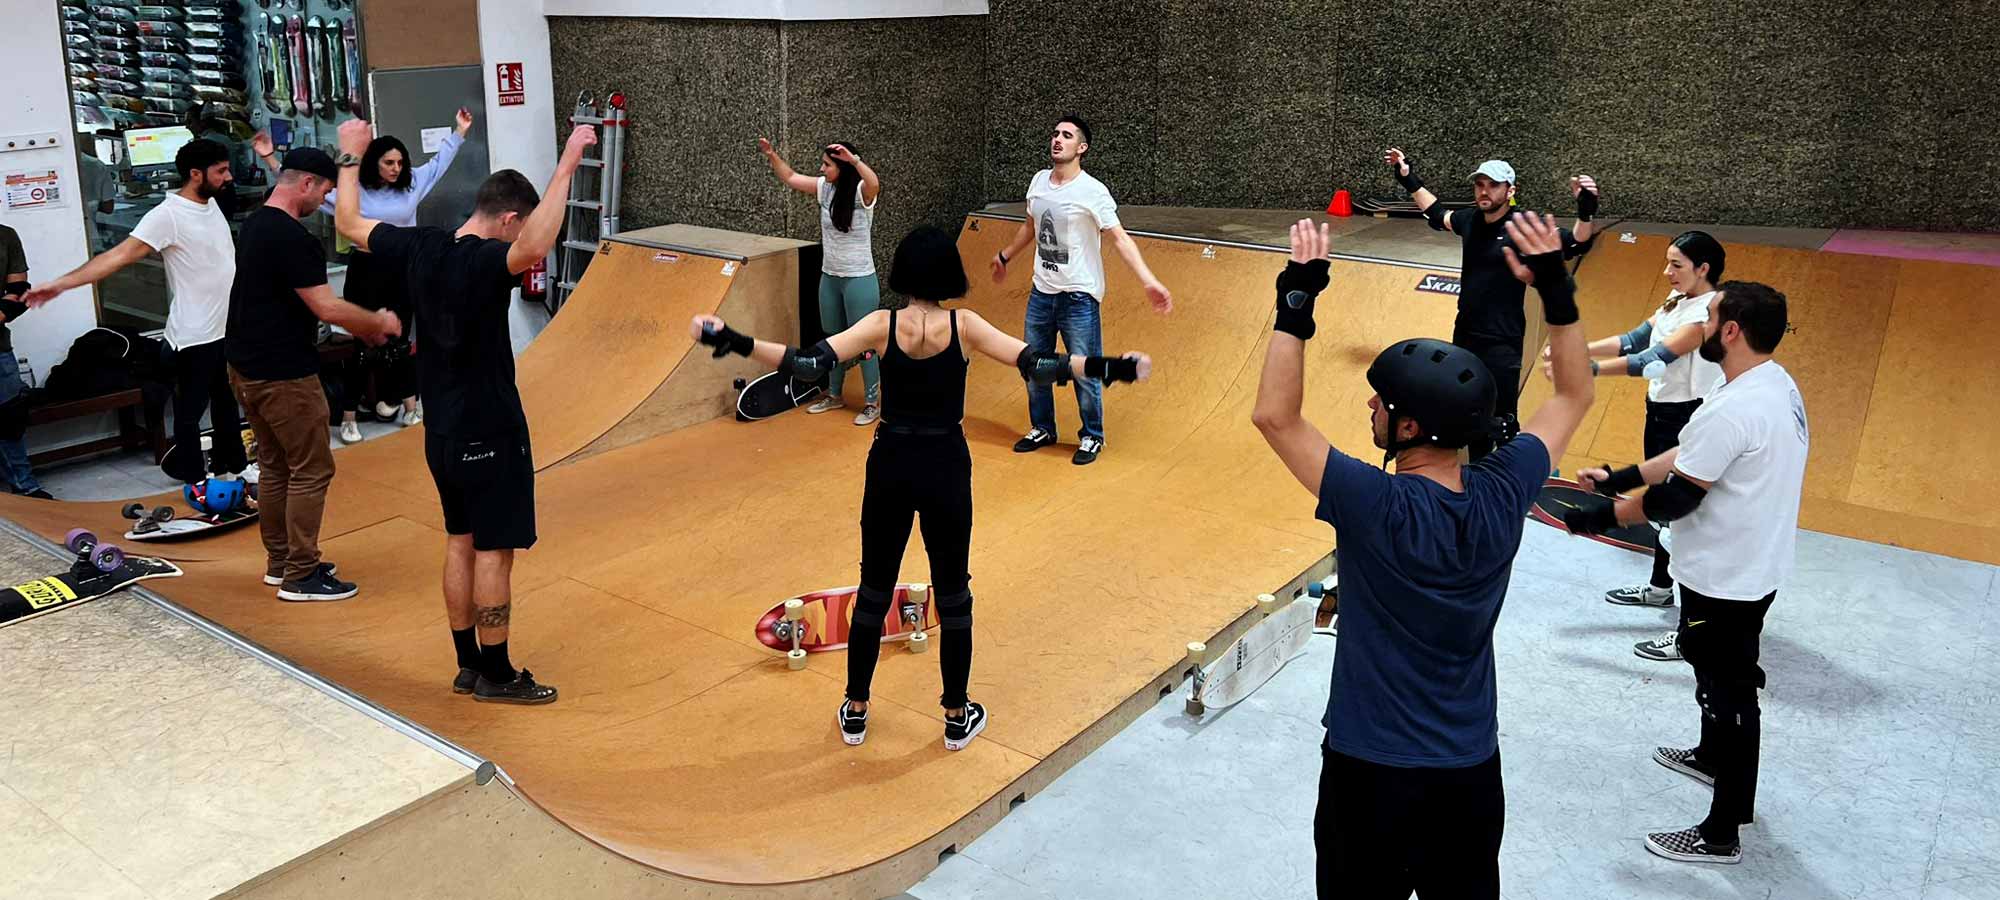 clases surfskate en skatepark indoor